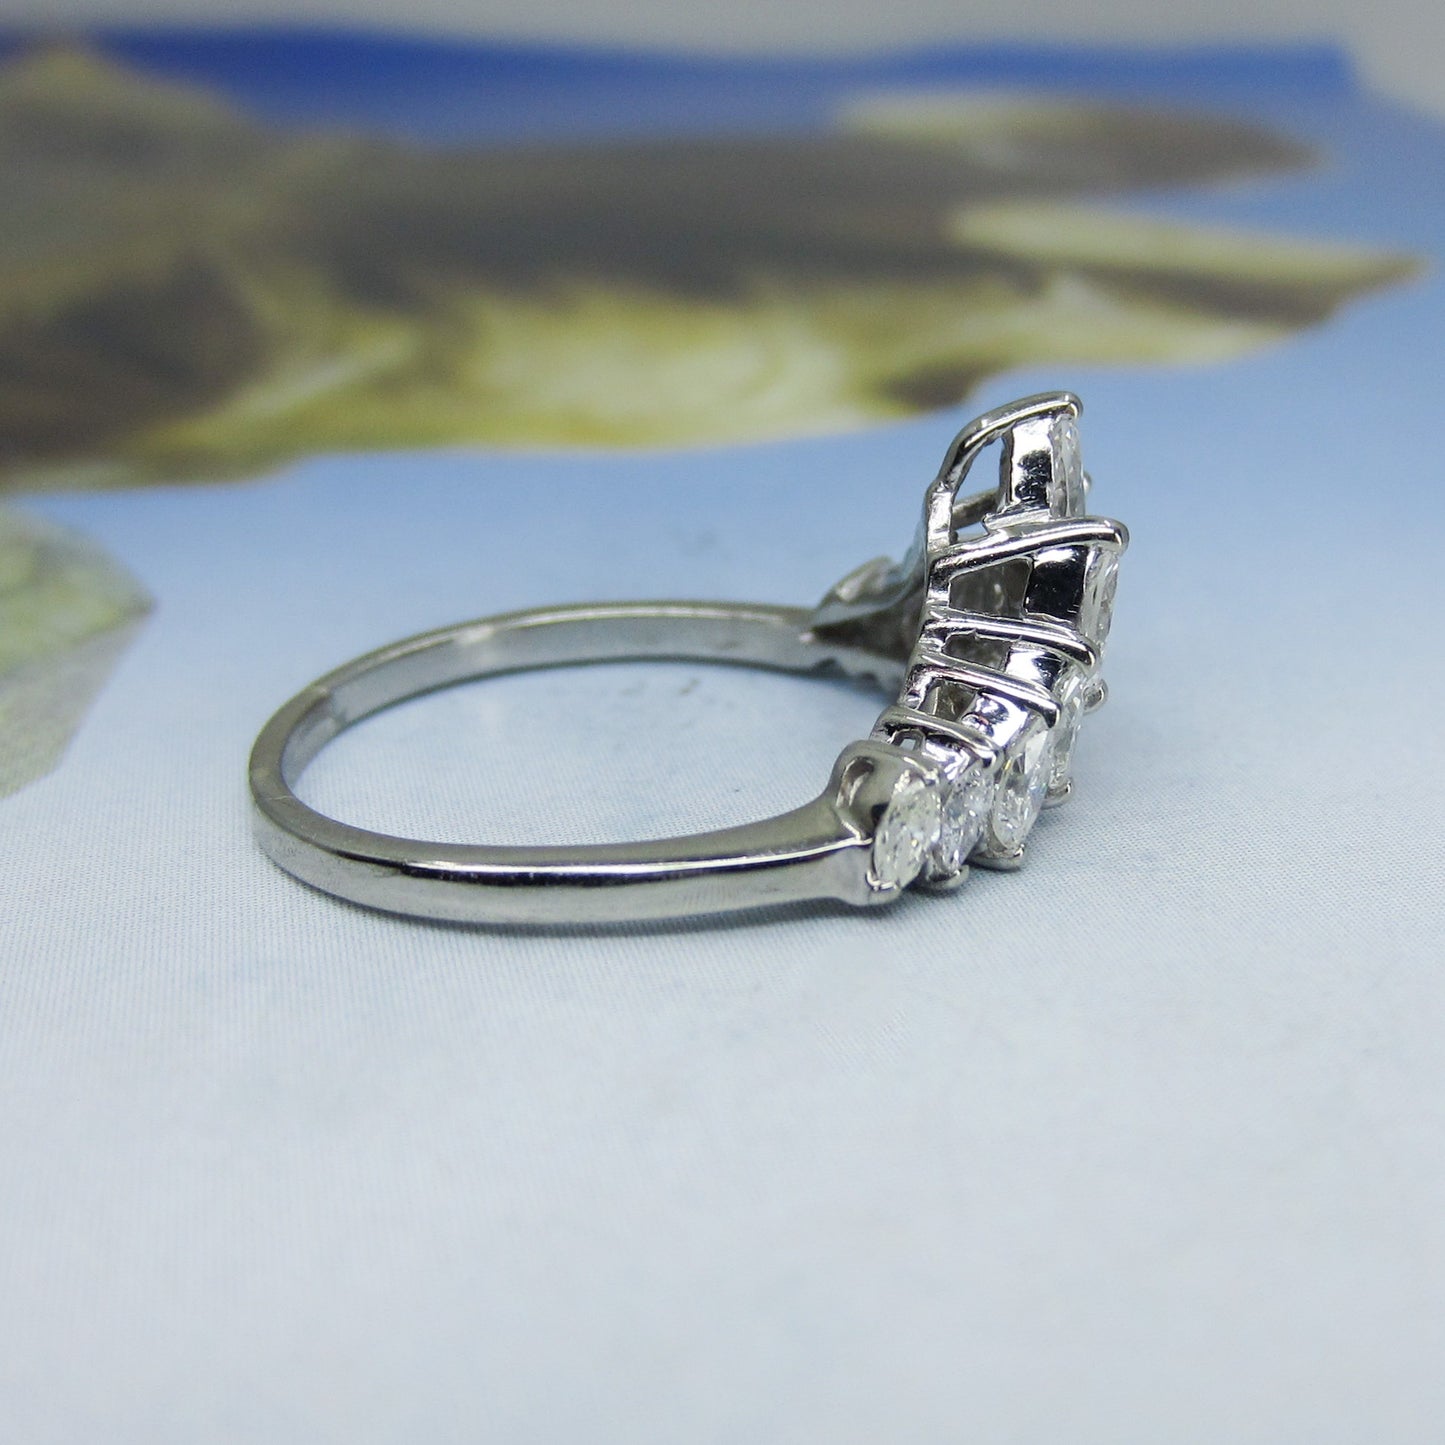 SOLD-Vintage Marquise Diamond Tiara Ring 14k c. 1960